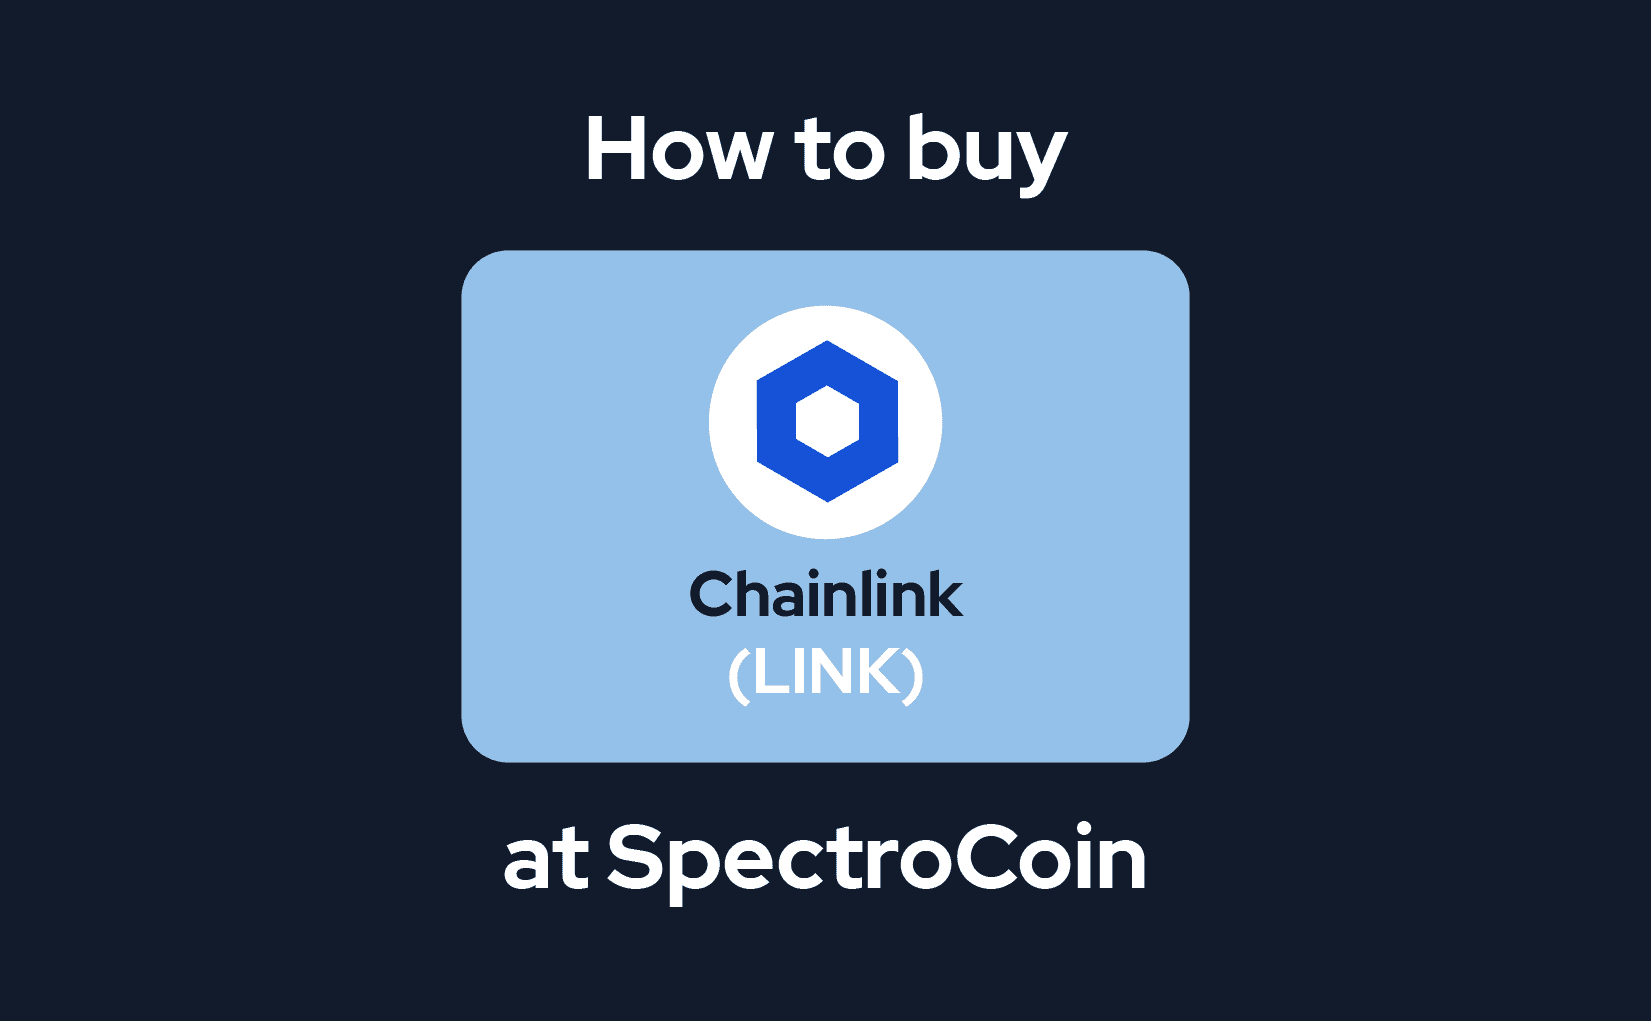 Gids voor het kopen van Chainlink bij SpectroCoin